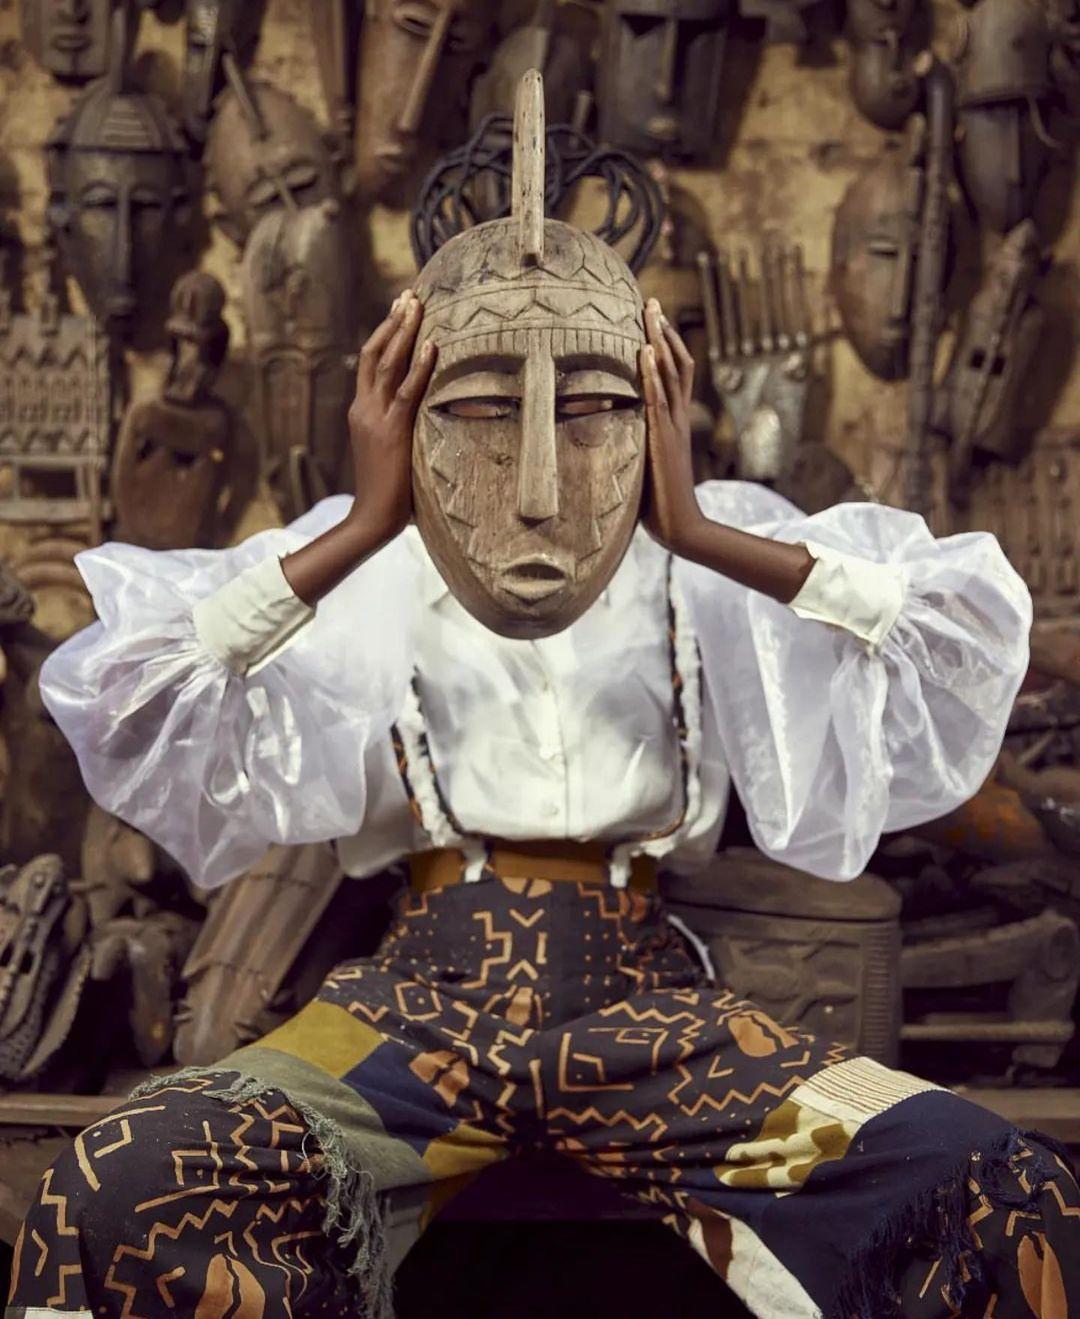 class="content__text"
 Quel est le rôle du masque africain ?
La fonction fondamentale du masque est de maintenir l'ordre. Le masque incarne les dieux et est le gardien de leur autorité. C'est un véritable outil ideologique pour assurer l'ordre social traditionnel en Afrique.
Ce projet a été réalisé en plein cœur du marché artisanal du Mali et je suis très fière du résultat. Merci à toute l'équipe

Photographe @theyesphotography
Vidéo @daddy_5pm
Design @jkdressing
Modele @lountylaperle

 #madeinmali #masqueafricain #beauteart #africa #culture
 #black #bogolan #culture #mali #mali_paw #malienw 
 